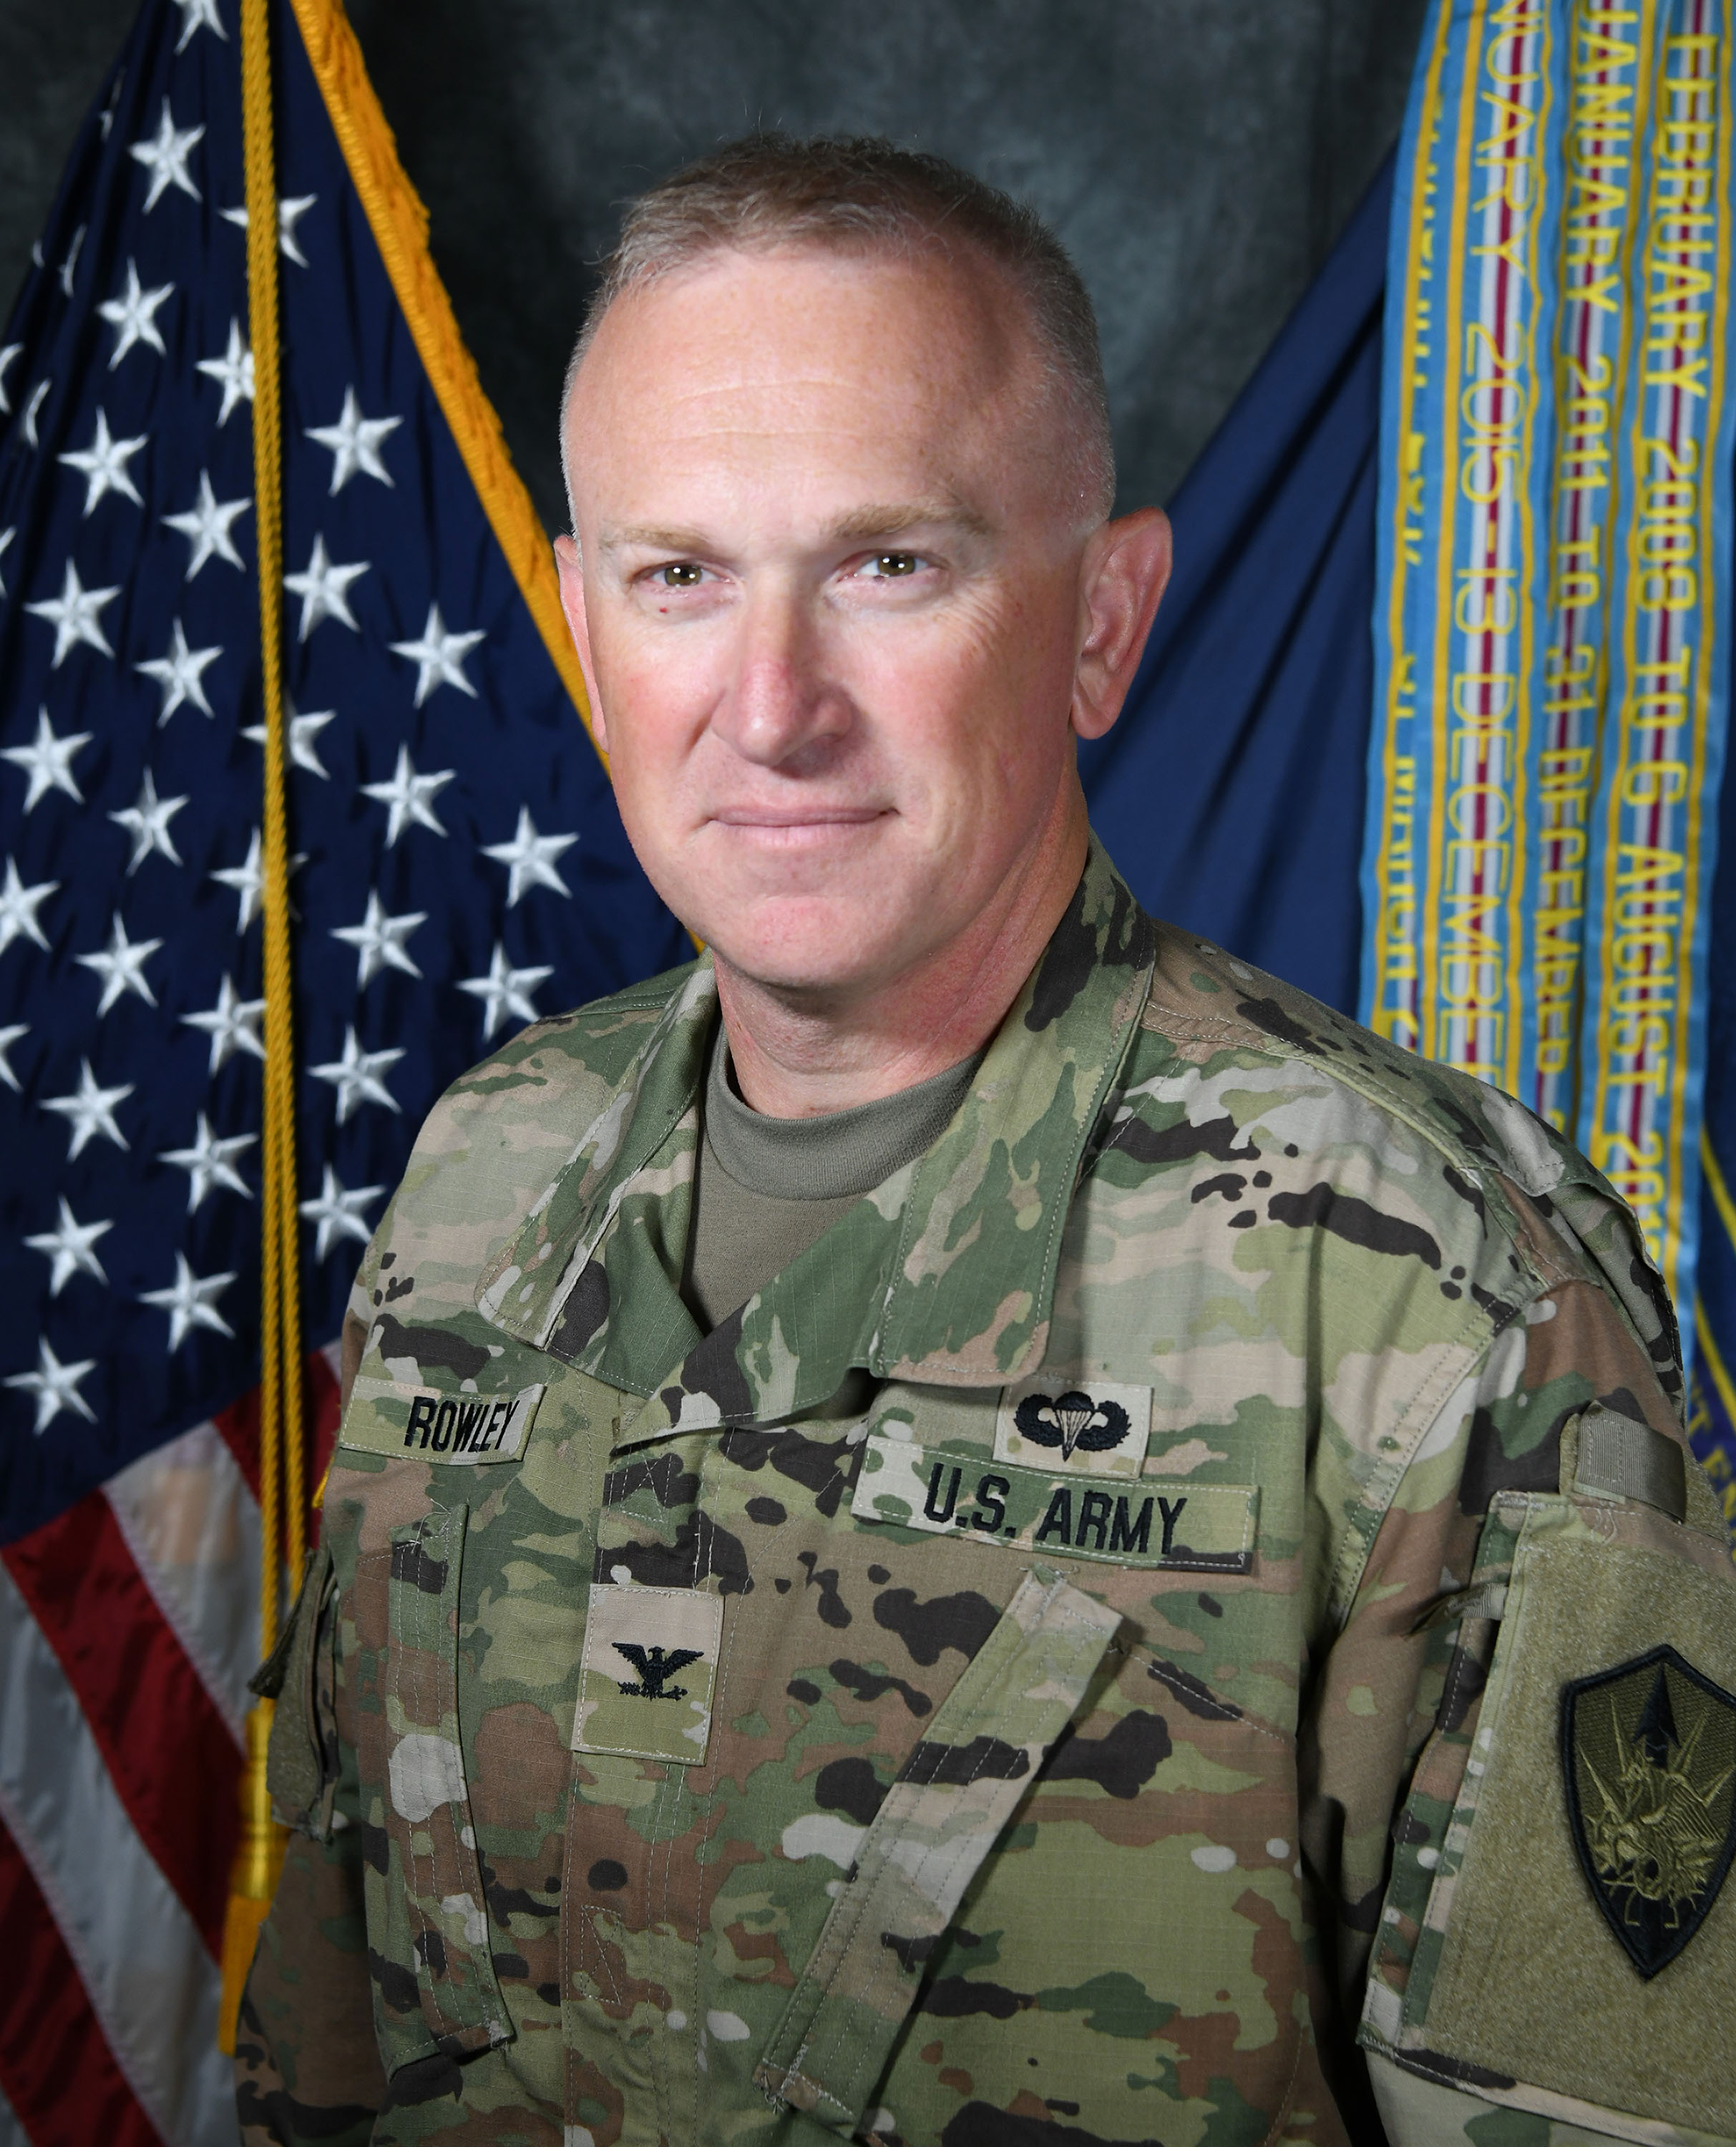 JECC Chief of Staff Colonel Gary D. Rowley